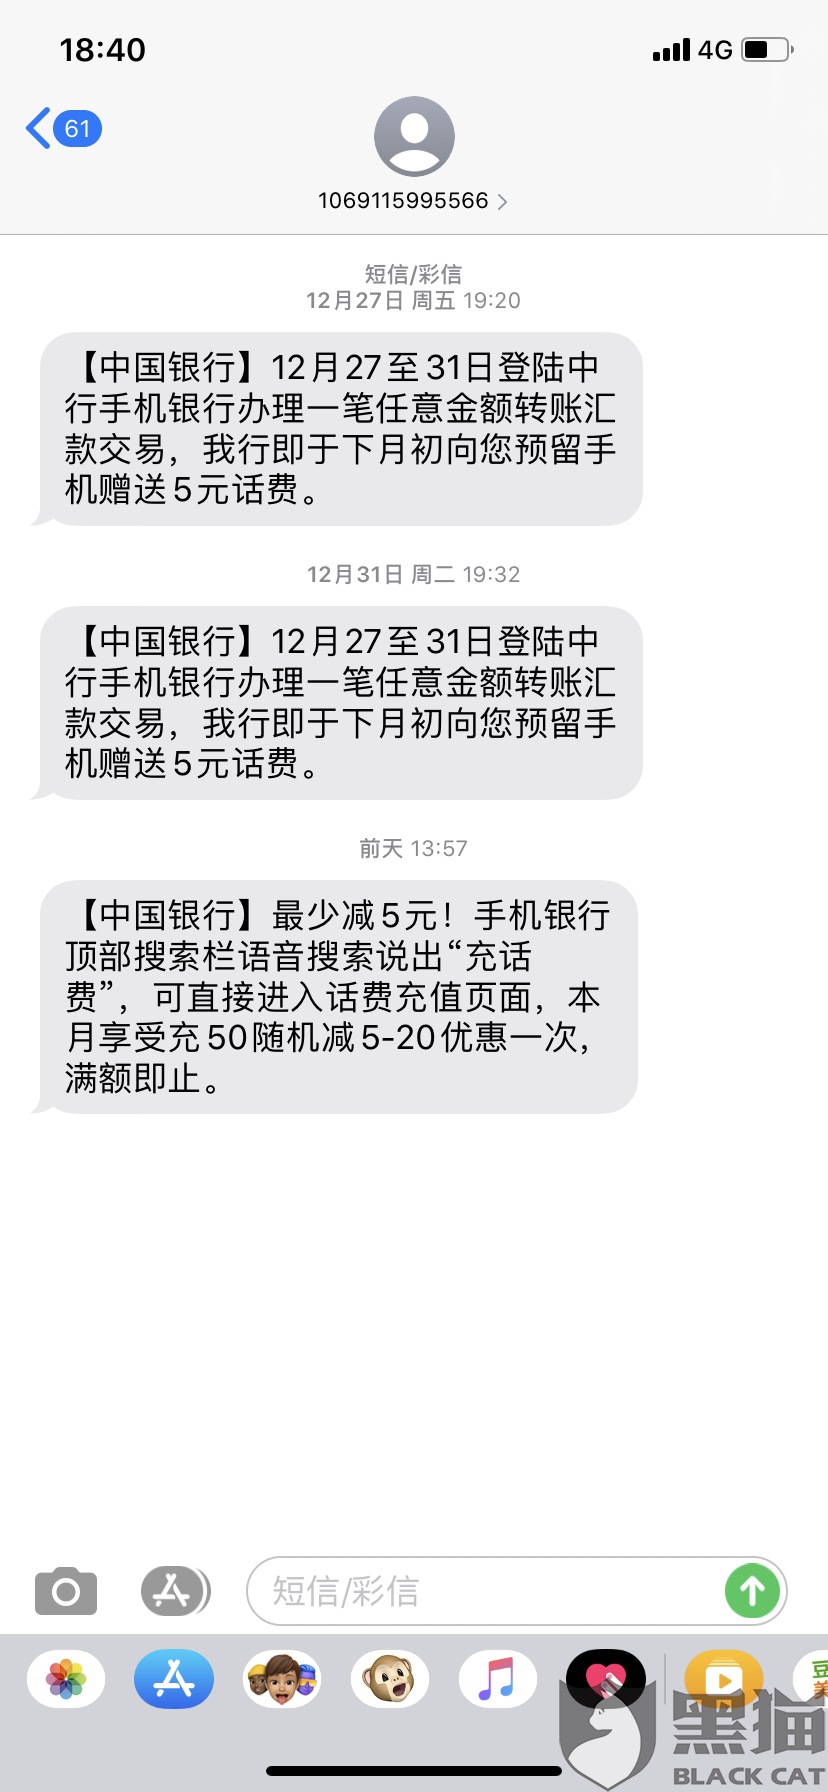 黑猫投诉:中国银行转账送话费虚假活动欺骗客户